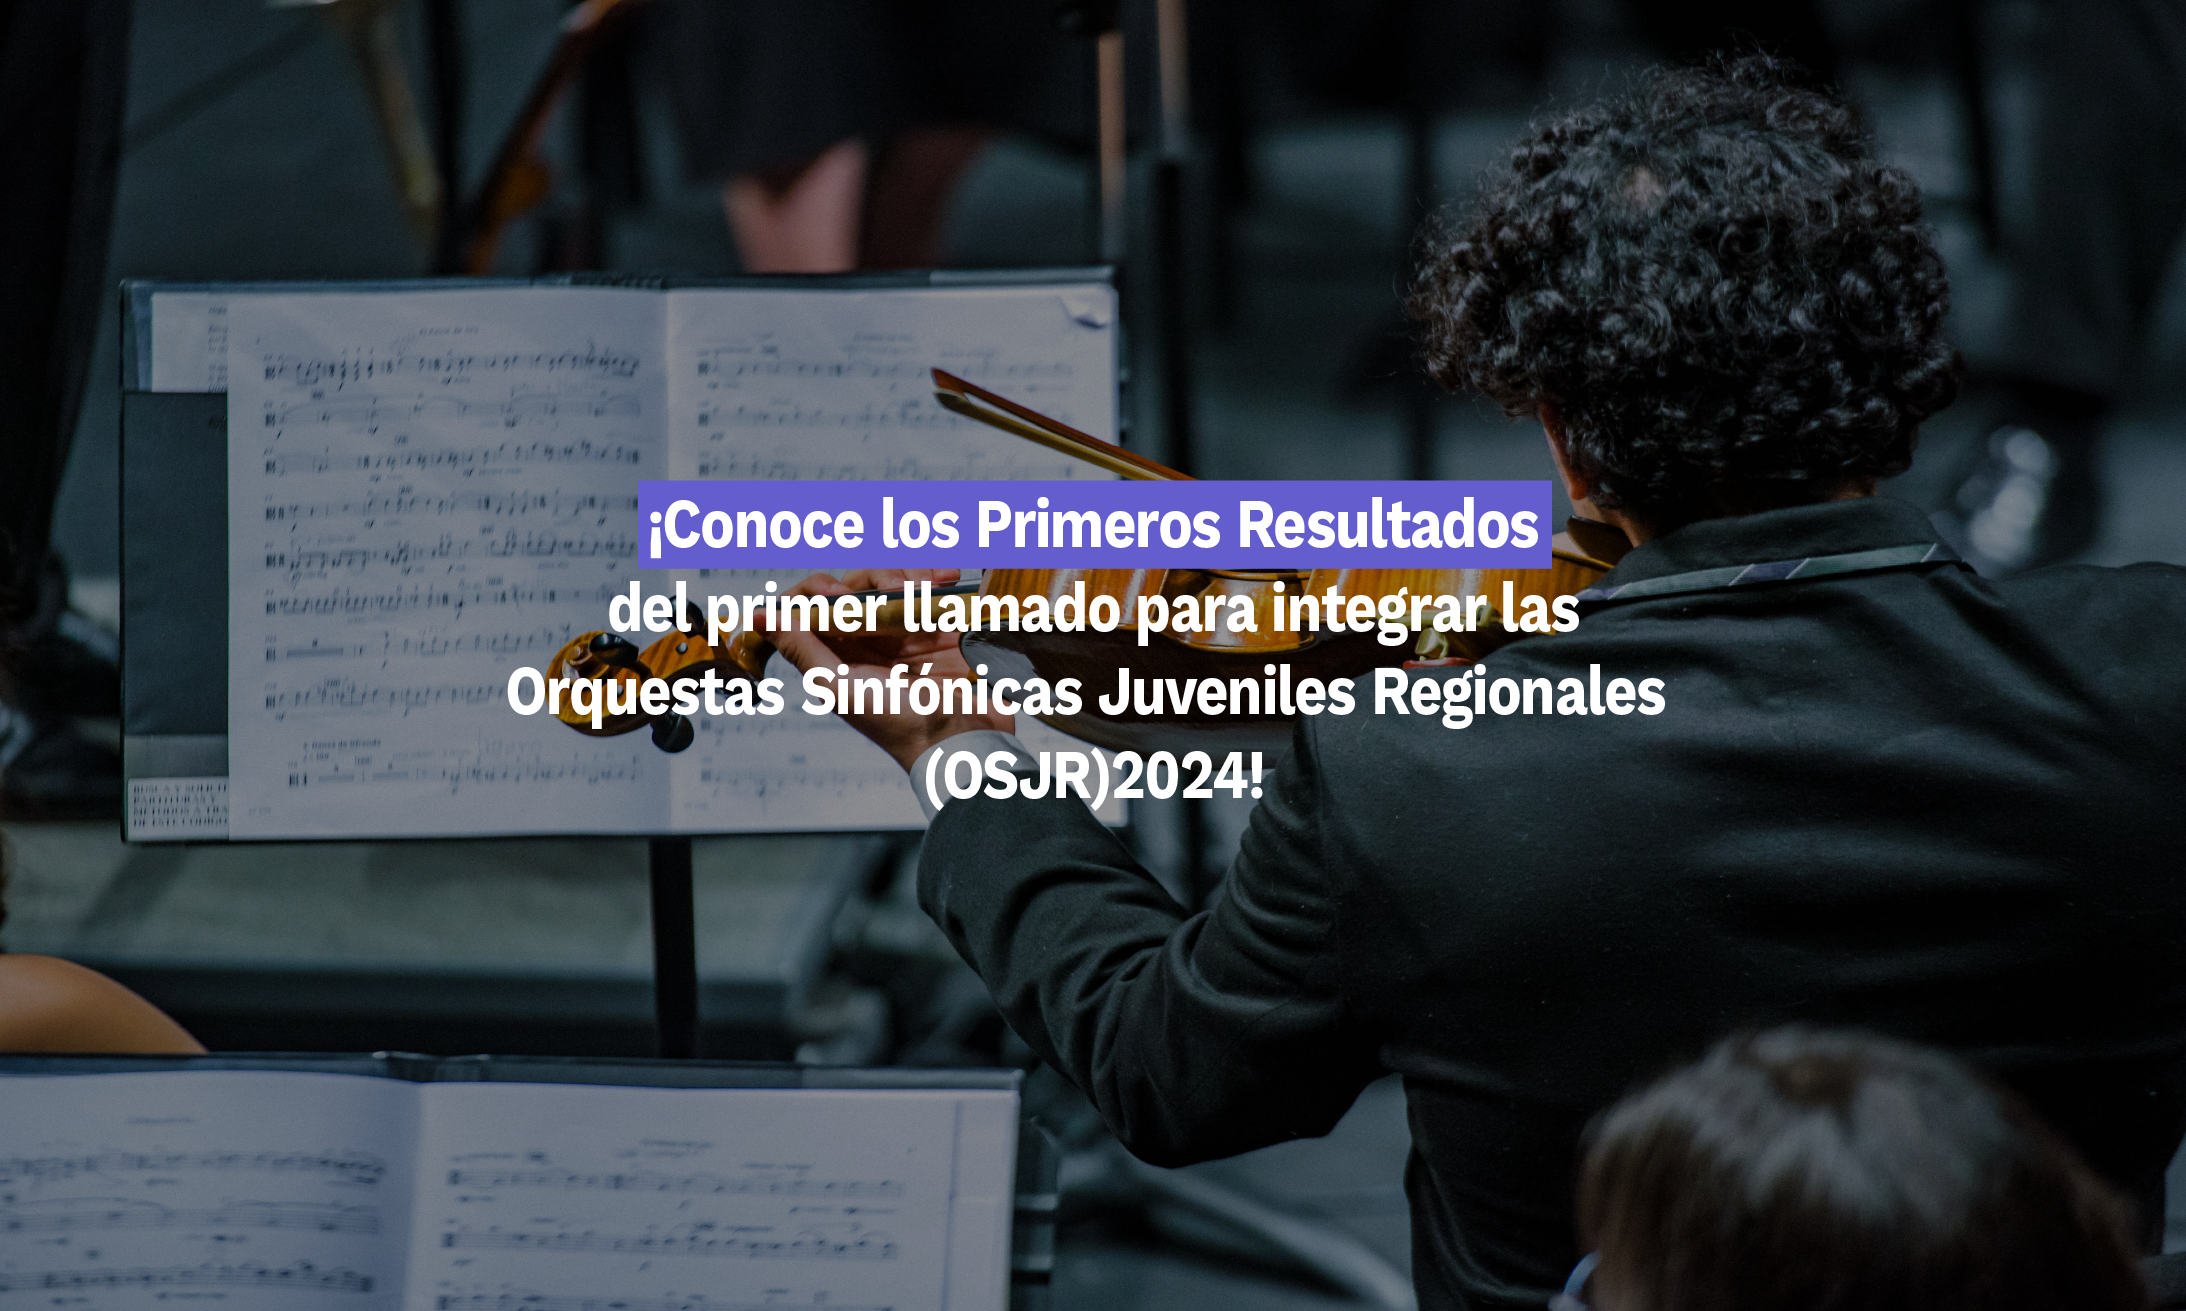 ¡CONOCE LOS PRIMEROS RESULTADOS!  Del primer llamado para integrar las Orquestas Sinfónicas Juveniles Regionales  (OSJR) 2024